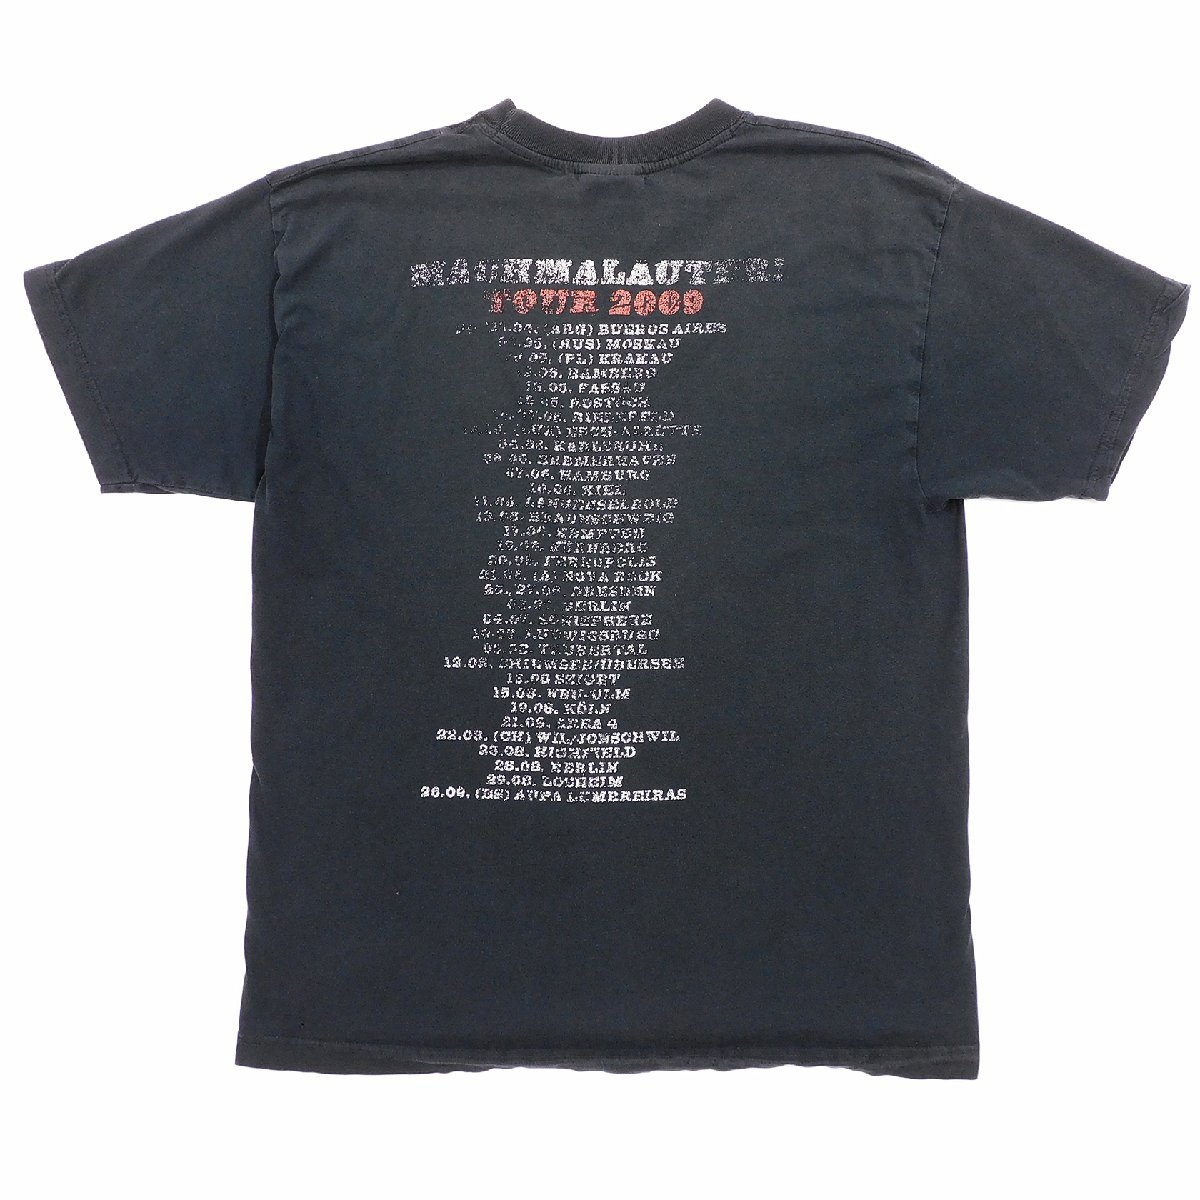 Die Toten Hosen MACHMALAUTER 2009 半袖 ツアーTシャツ size M #98667 送料360円 ディトーテンホーゼン パンク ロック バンド Tee ドイツ_画像2